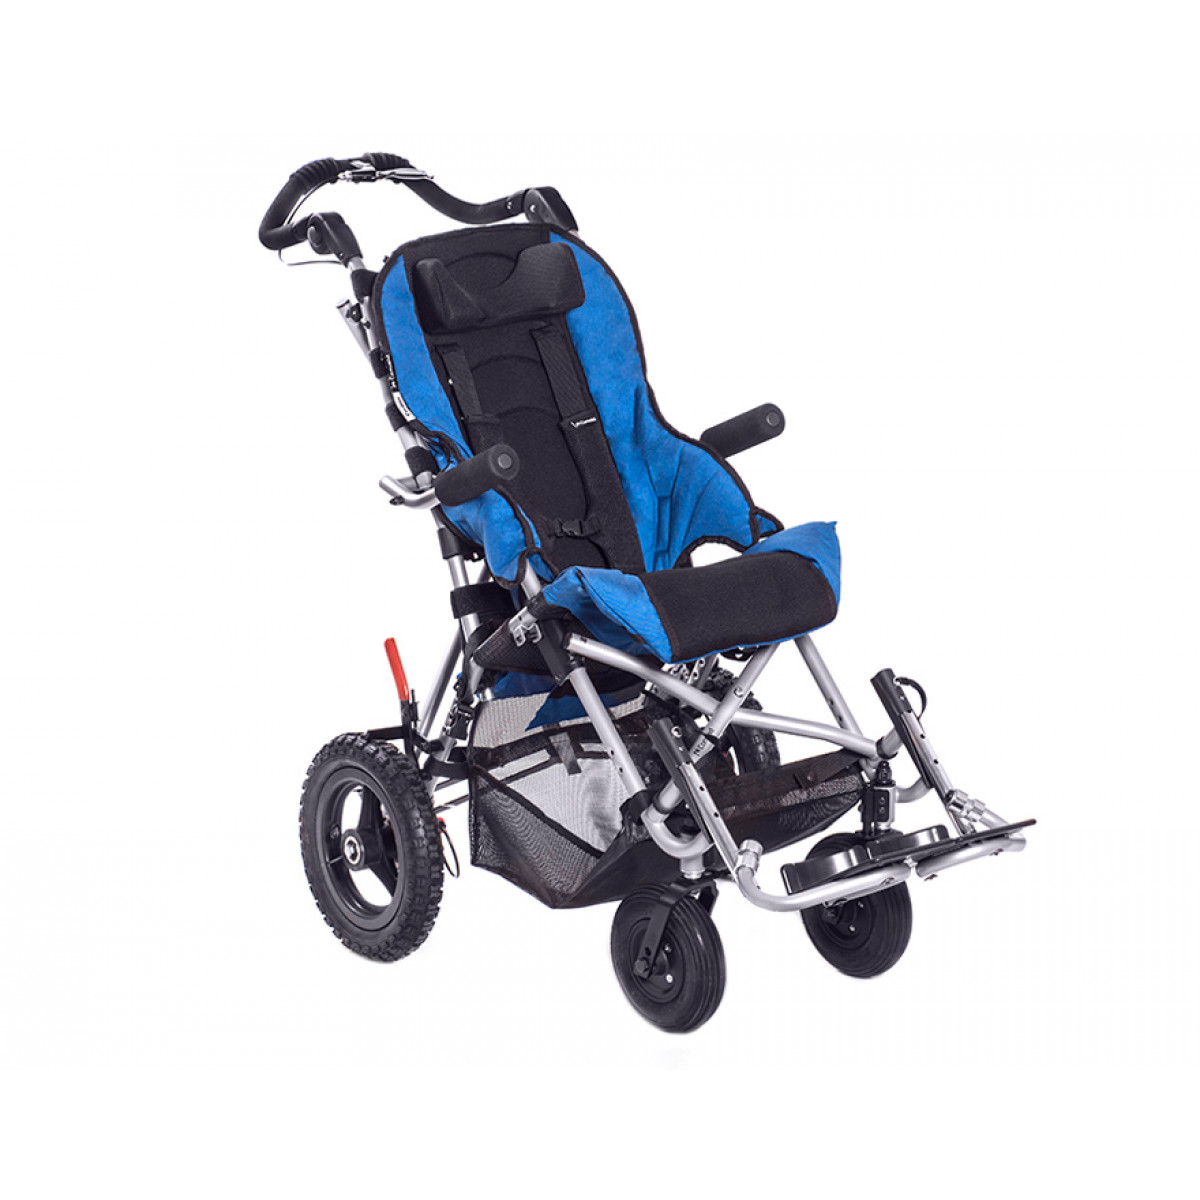 Прогулочная коляска для детей с дцп. Инвалидная коляска Конвайд круизер. Коляска ДЦП Convaid. Коляска для детей с ДЦП Конваид. Коляска Конвейд Крузер.